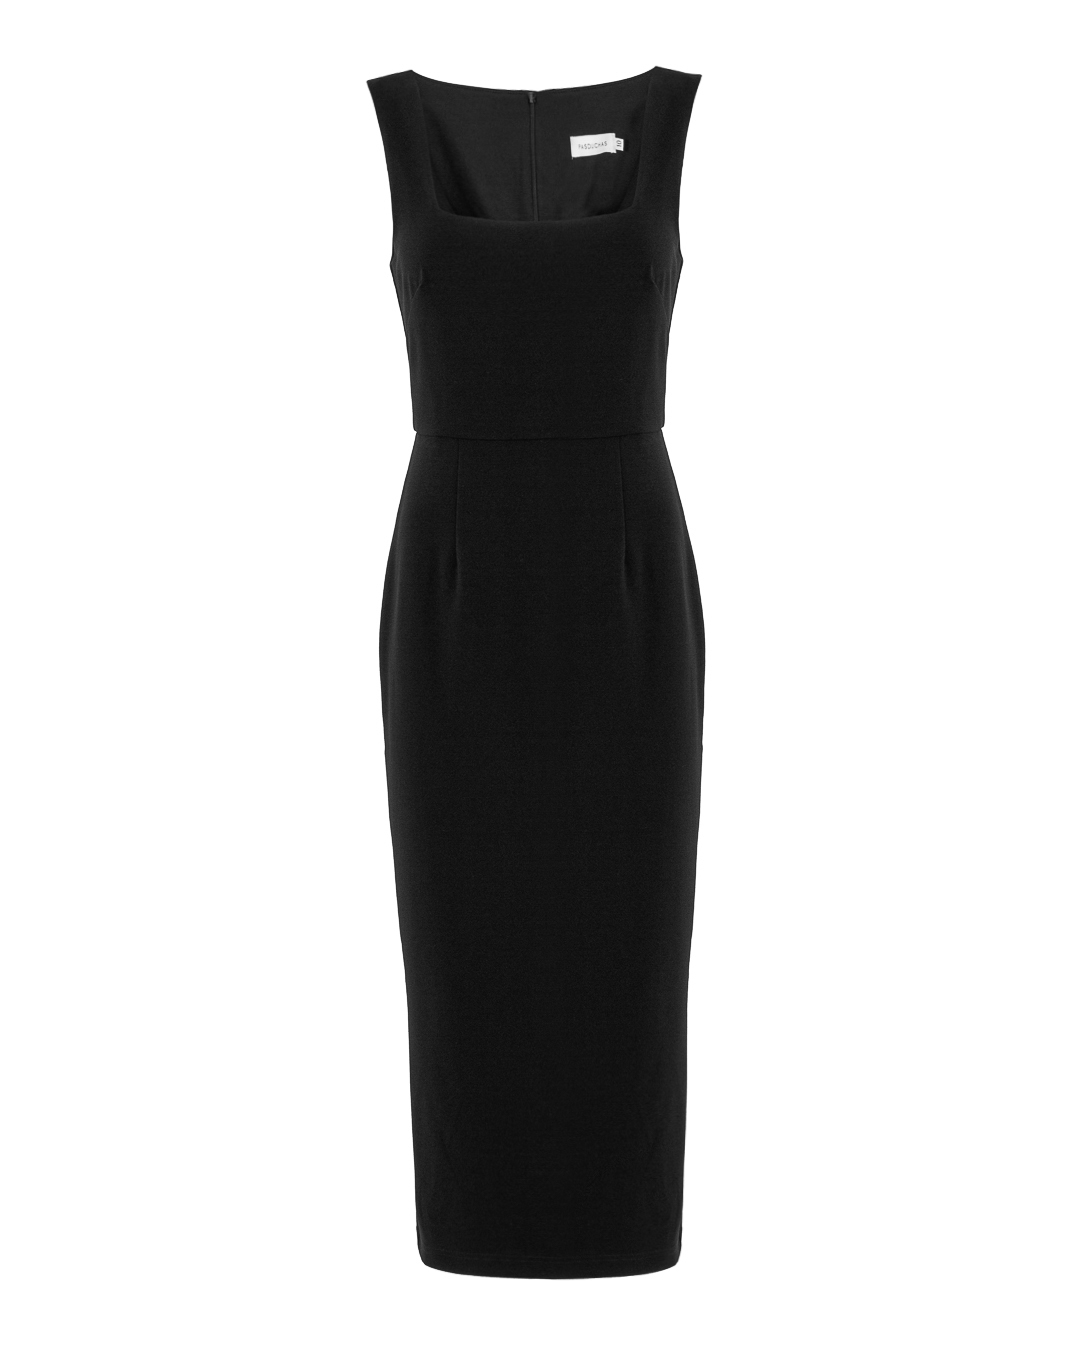 платье PASDUCHAS PD101200 черный 12, размер 12 - фото 1